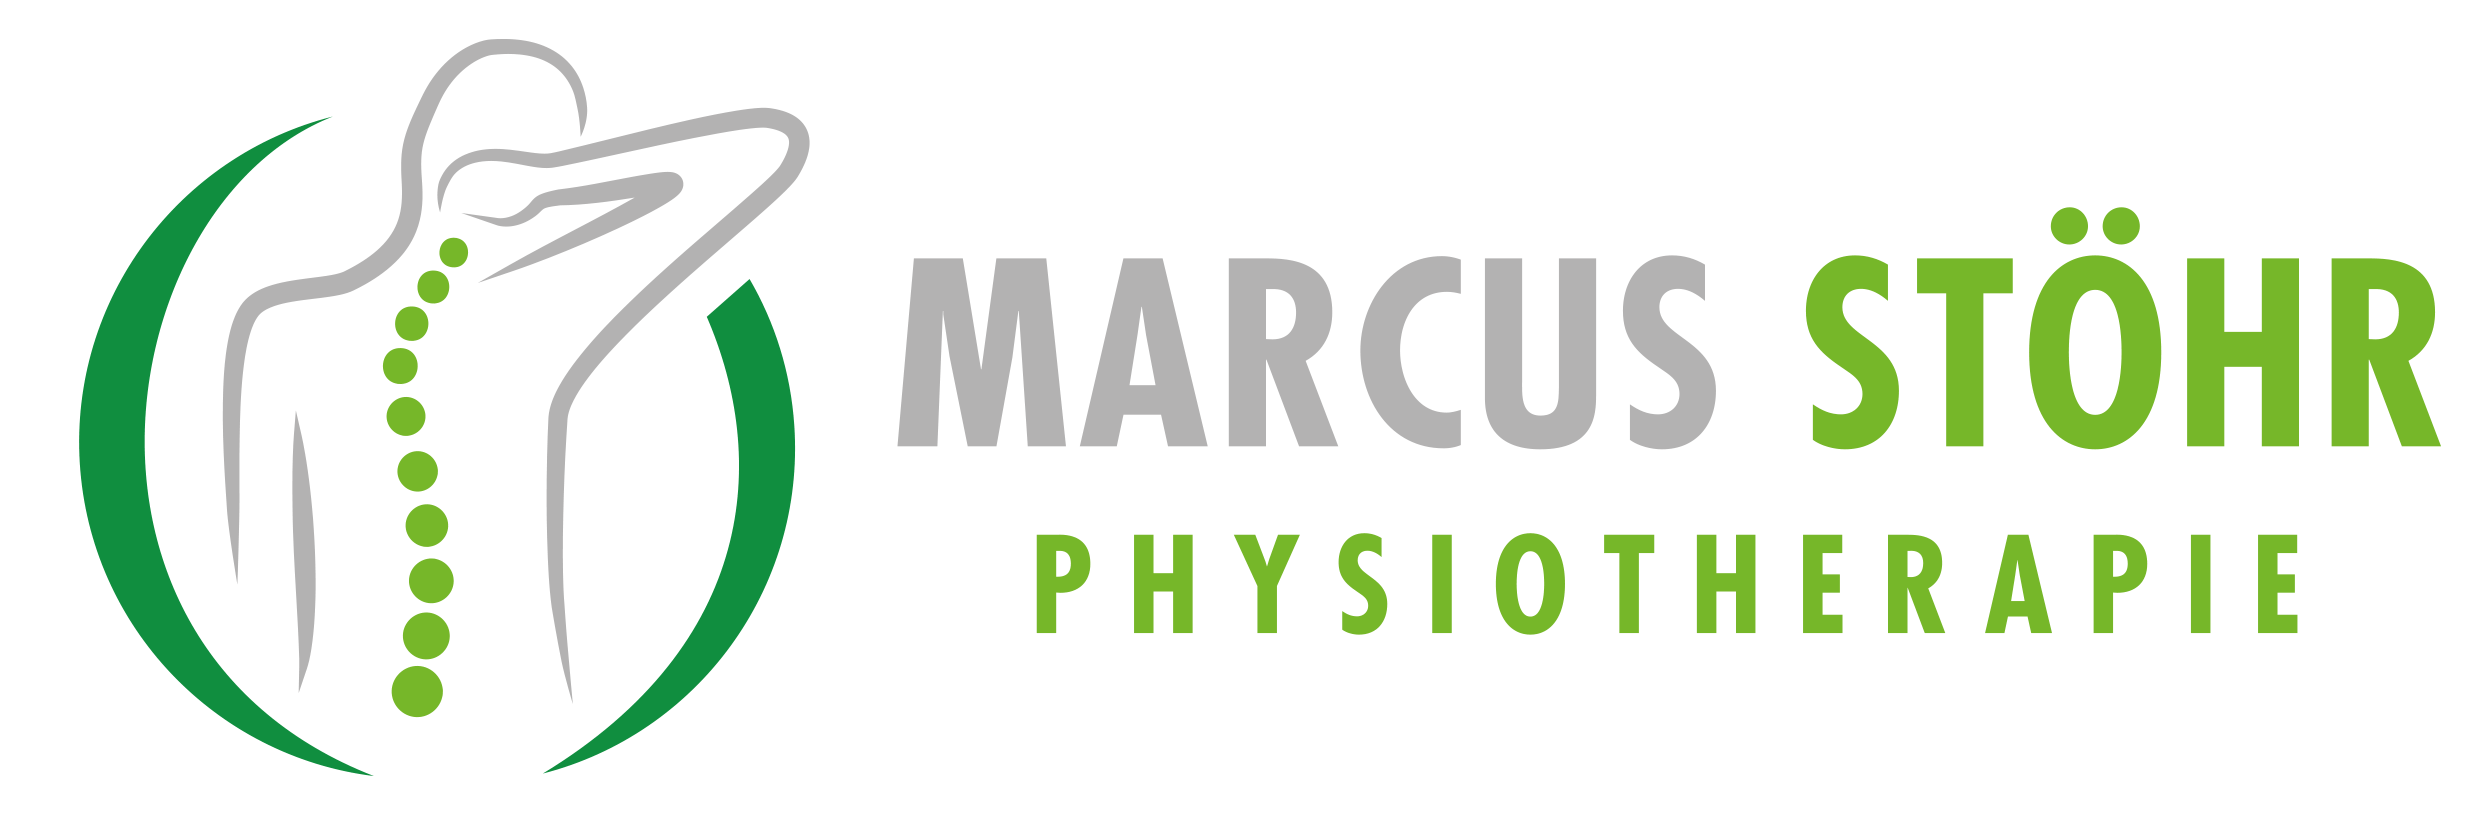 Physiotherapie Marcus Stöhr in Ispringen / Pforzheim